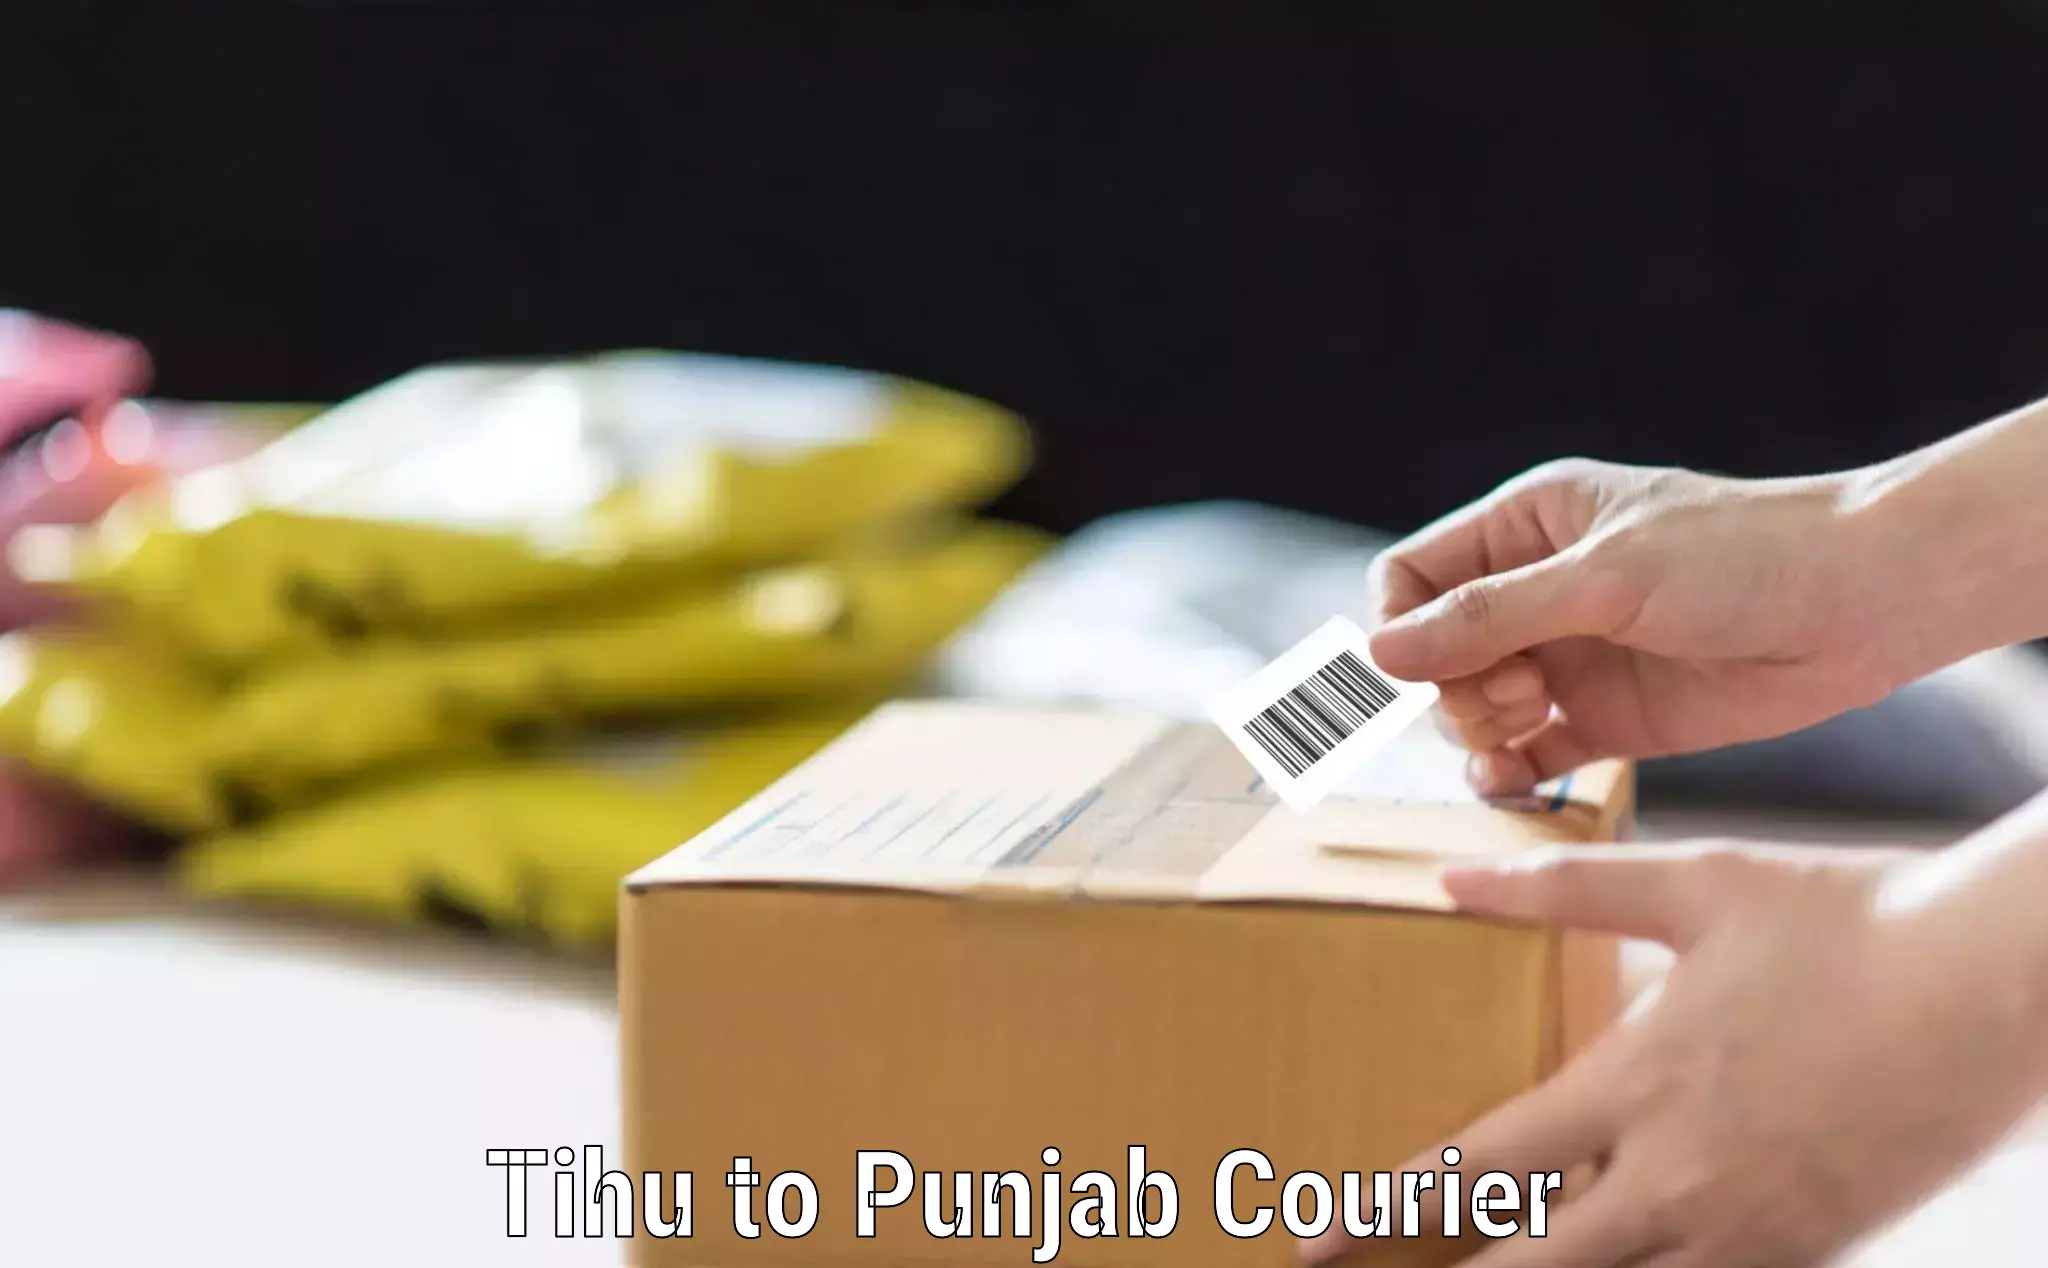 Baggage transport scheduler Tihu to Punjab